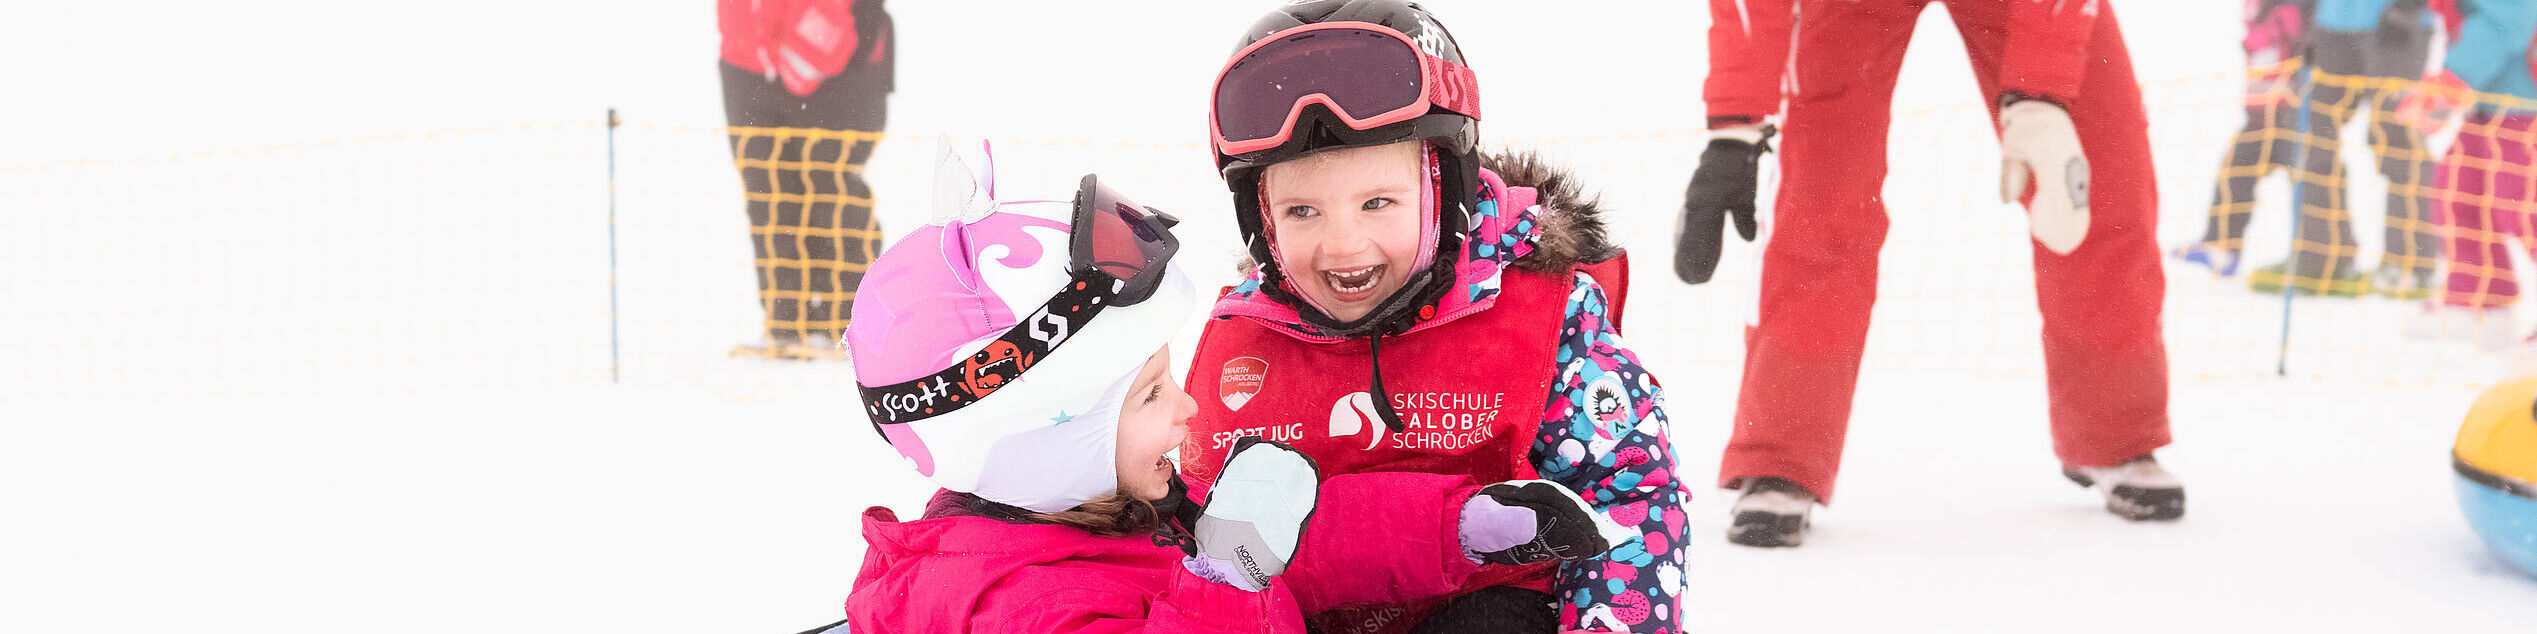 Zwei lachende Kinder sitzen in einem Schnee-Reifen, der von einer Skilehrerin angeschubst wurde